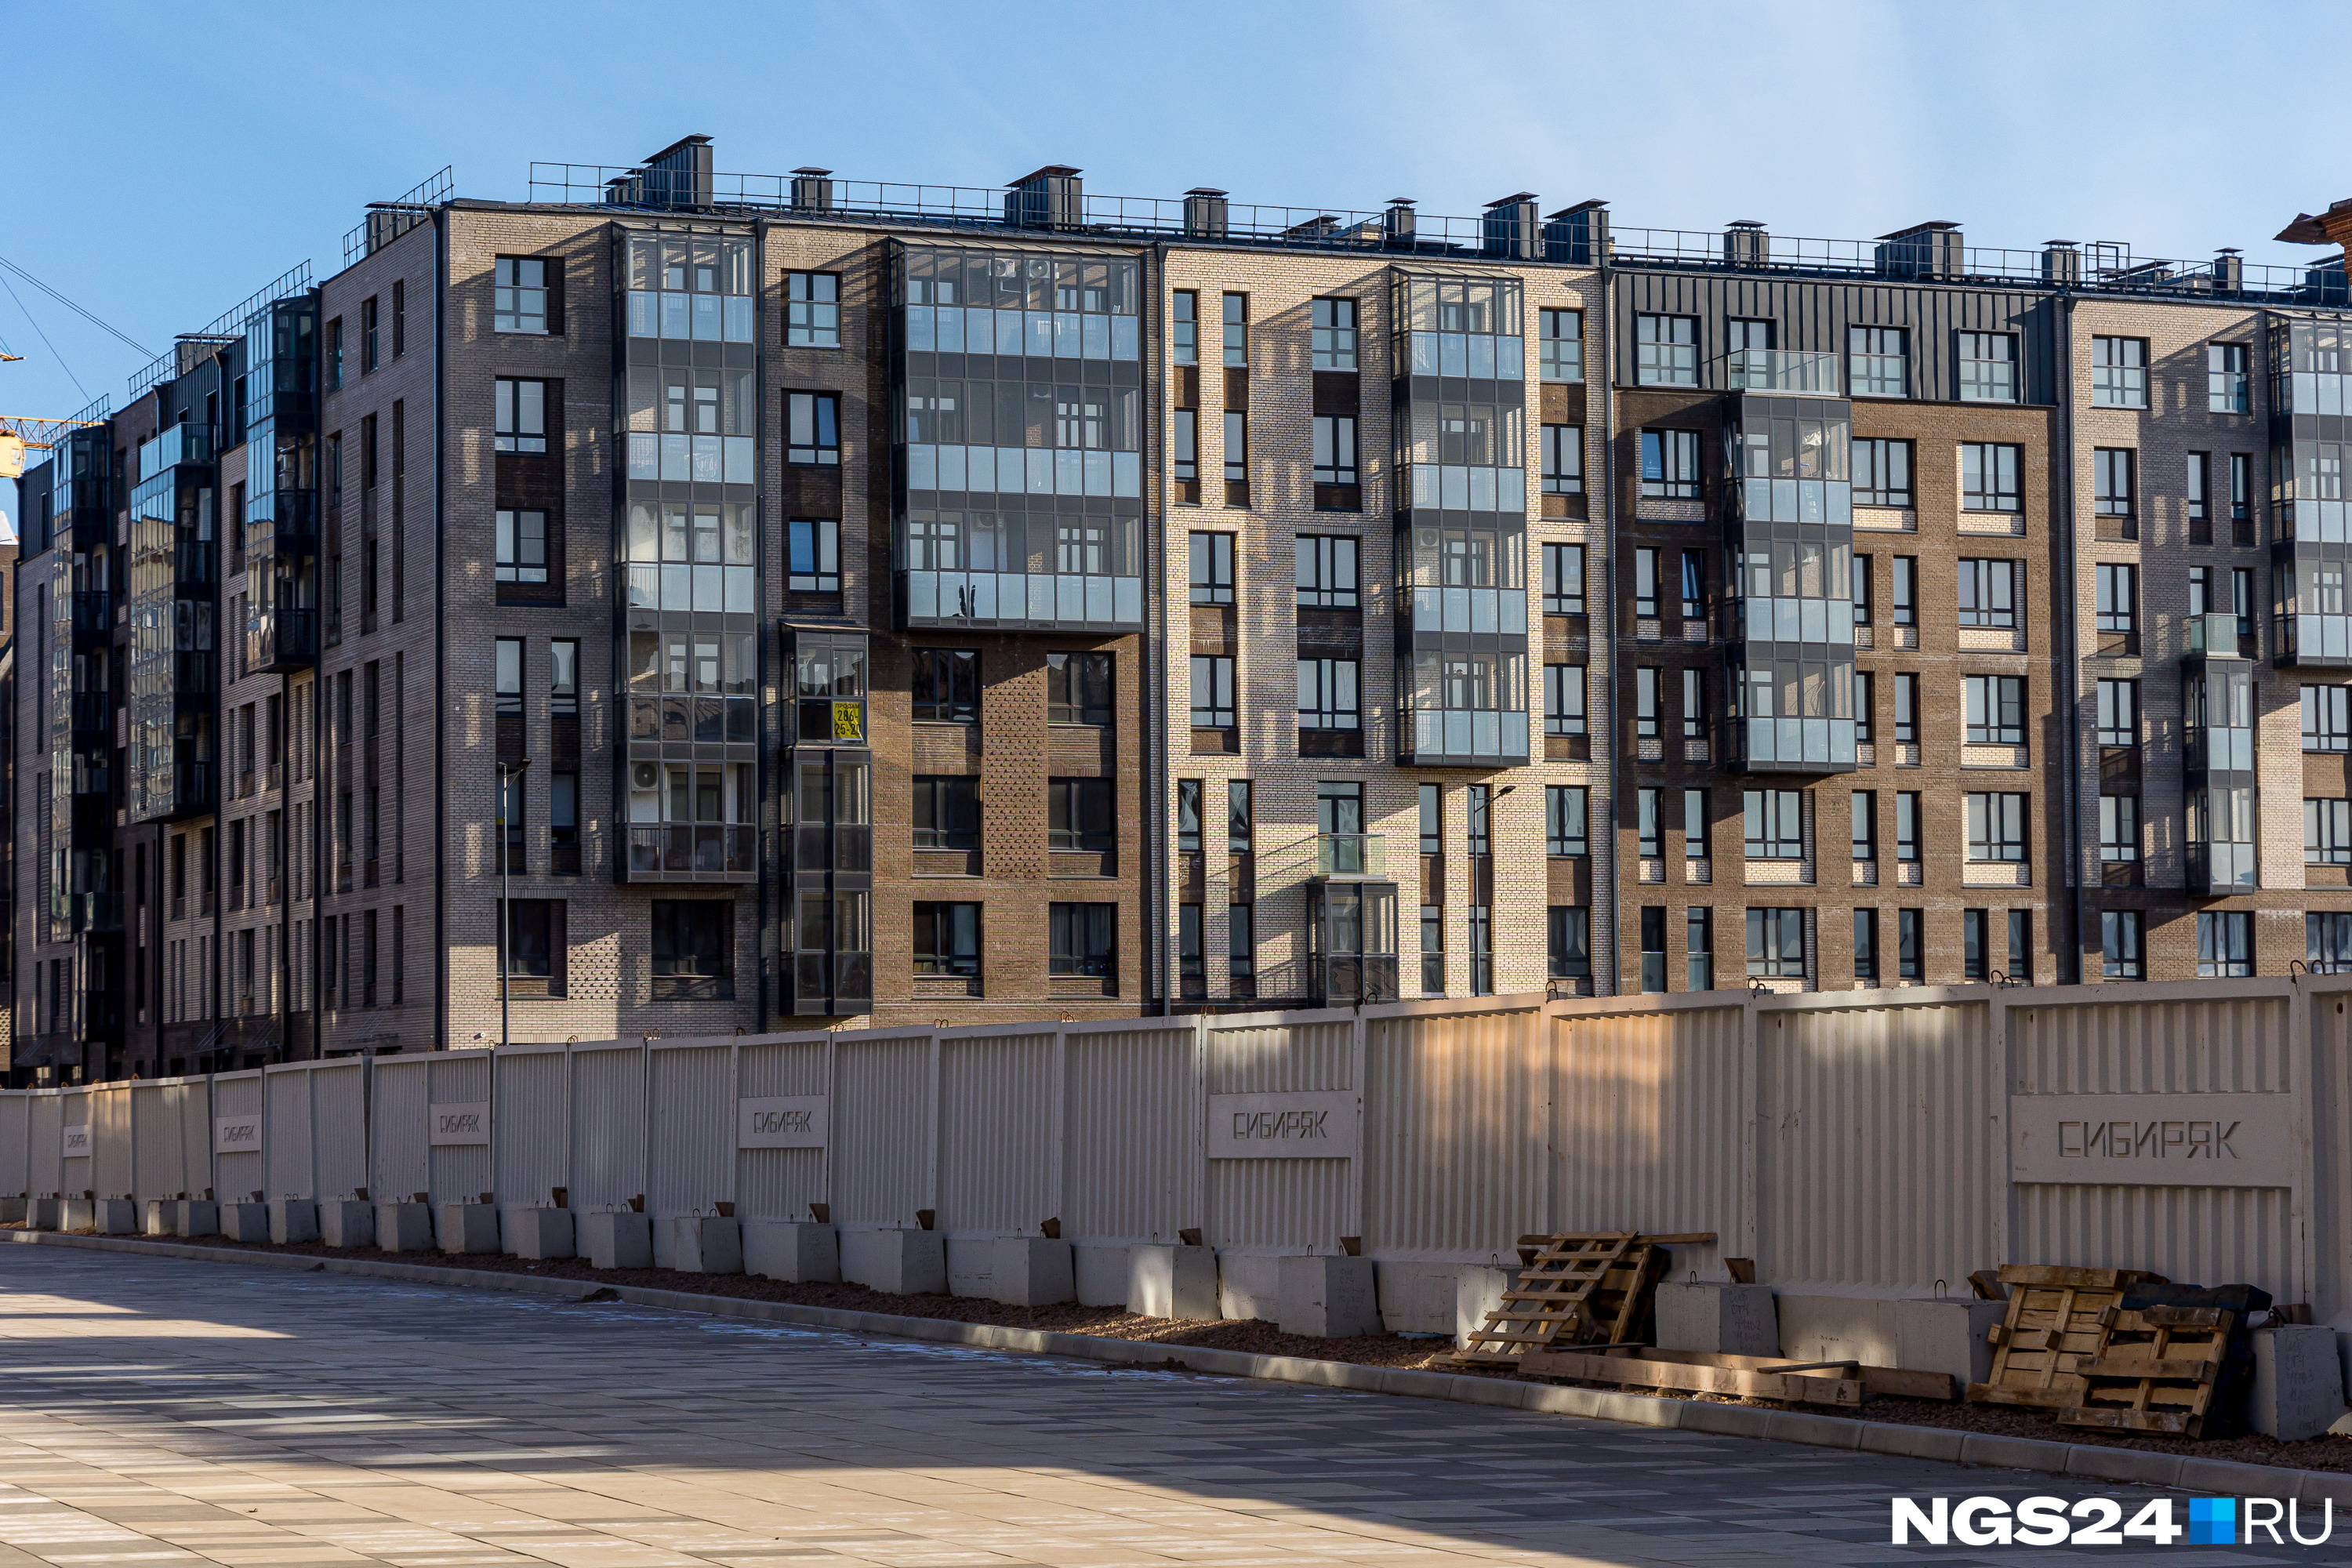 Квартиры на <nobr class="_">Бограда, 107</nobr> стоят от 7 до 13 миллионов рублей на сайтах по продаже недвижимости